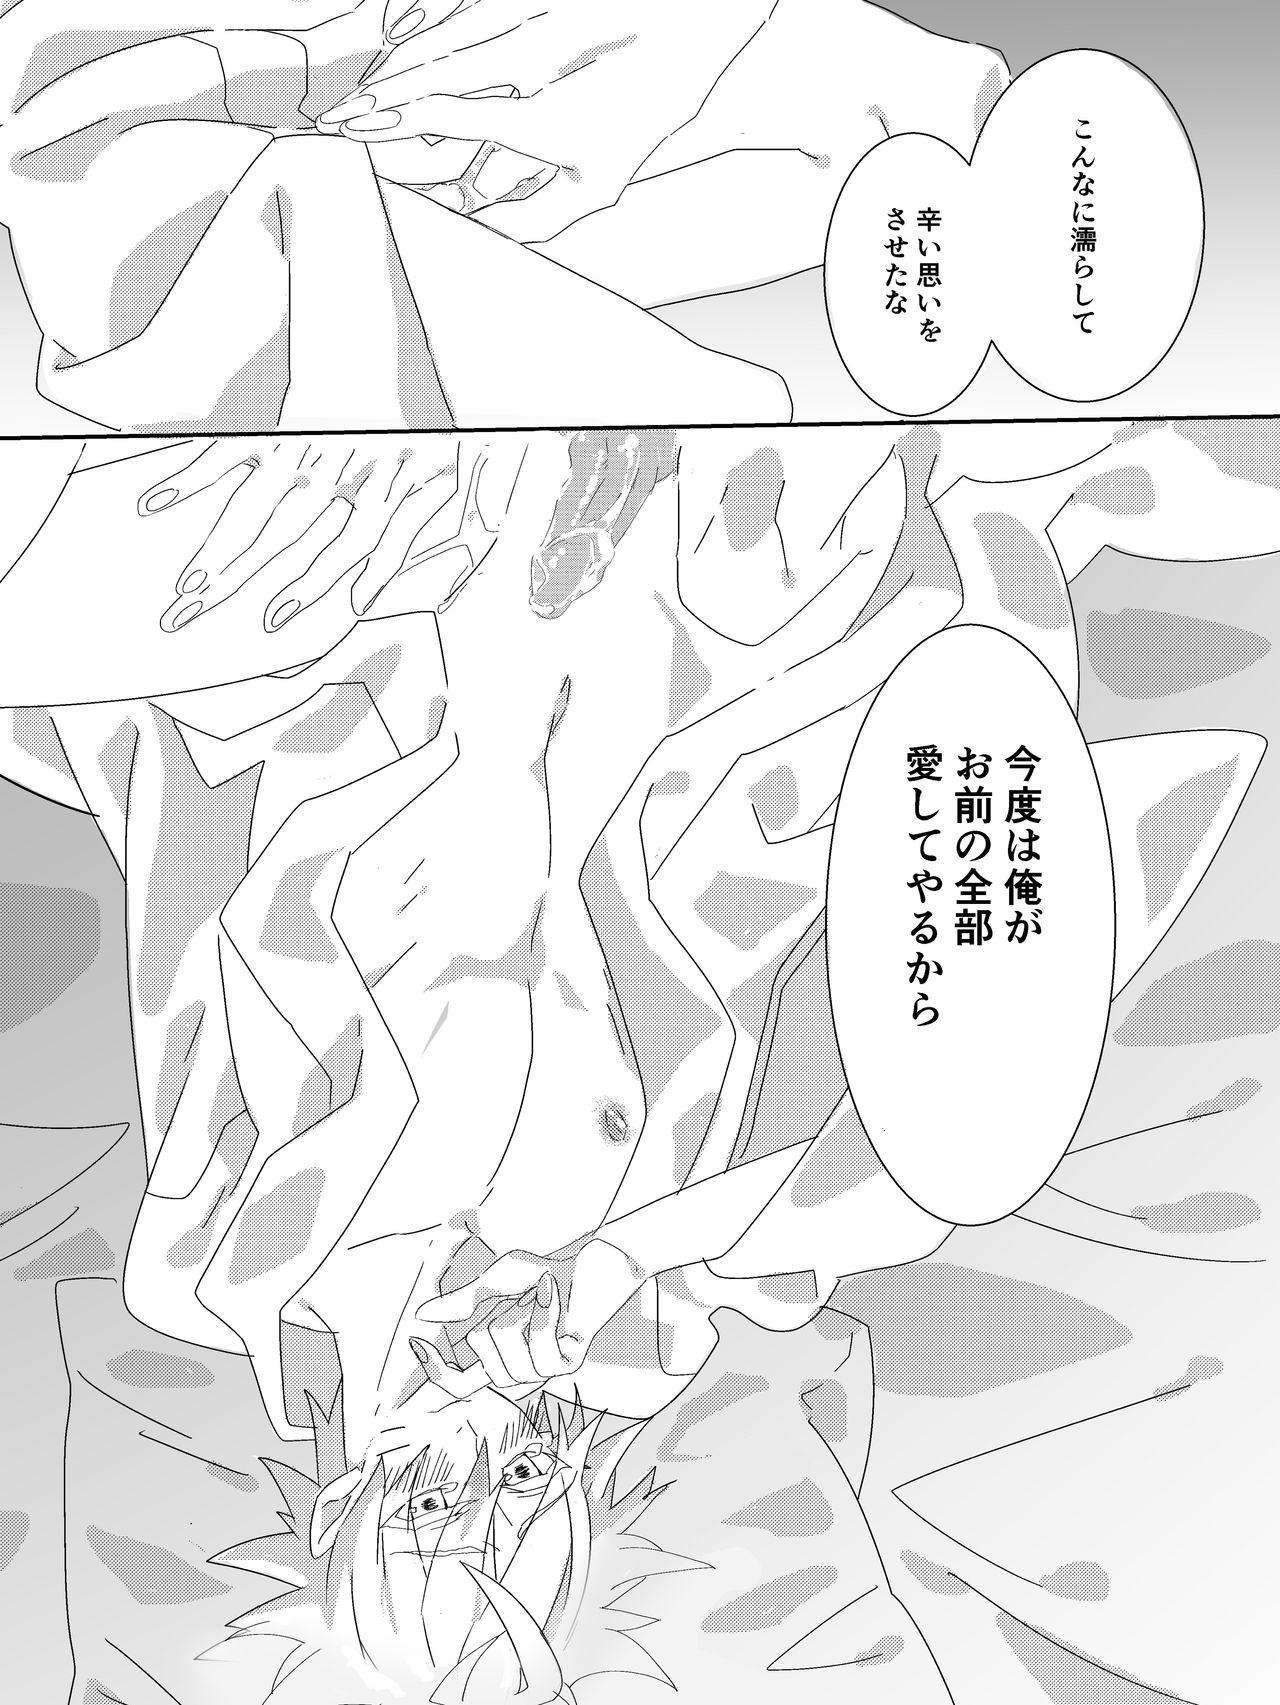 Hidden Camera Shigoto Kara Kaeru to Itsumo Naruto ga Hen na Fuku o Kite Stumble te Iru - Naruto Amazing - Page 7